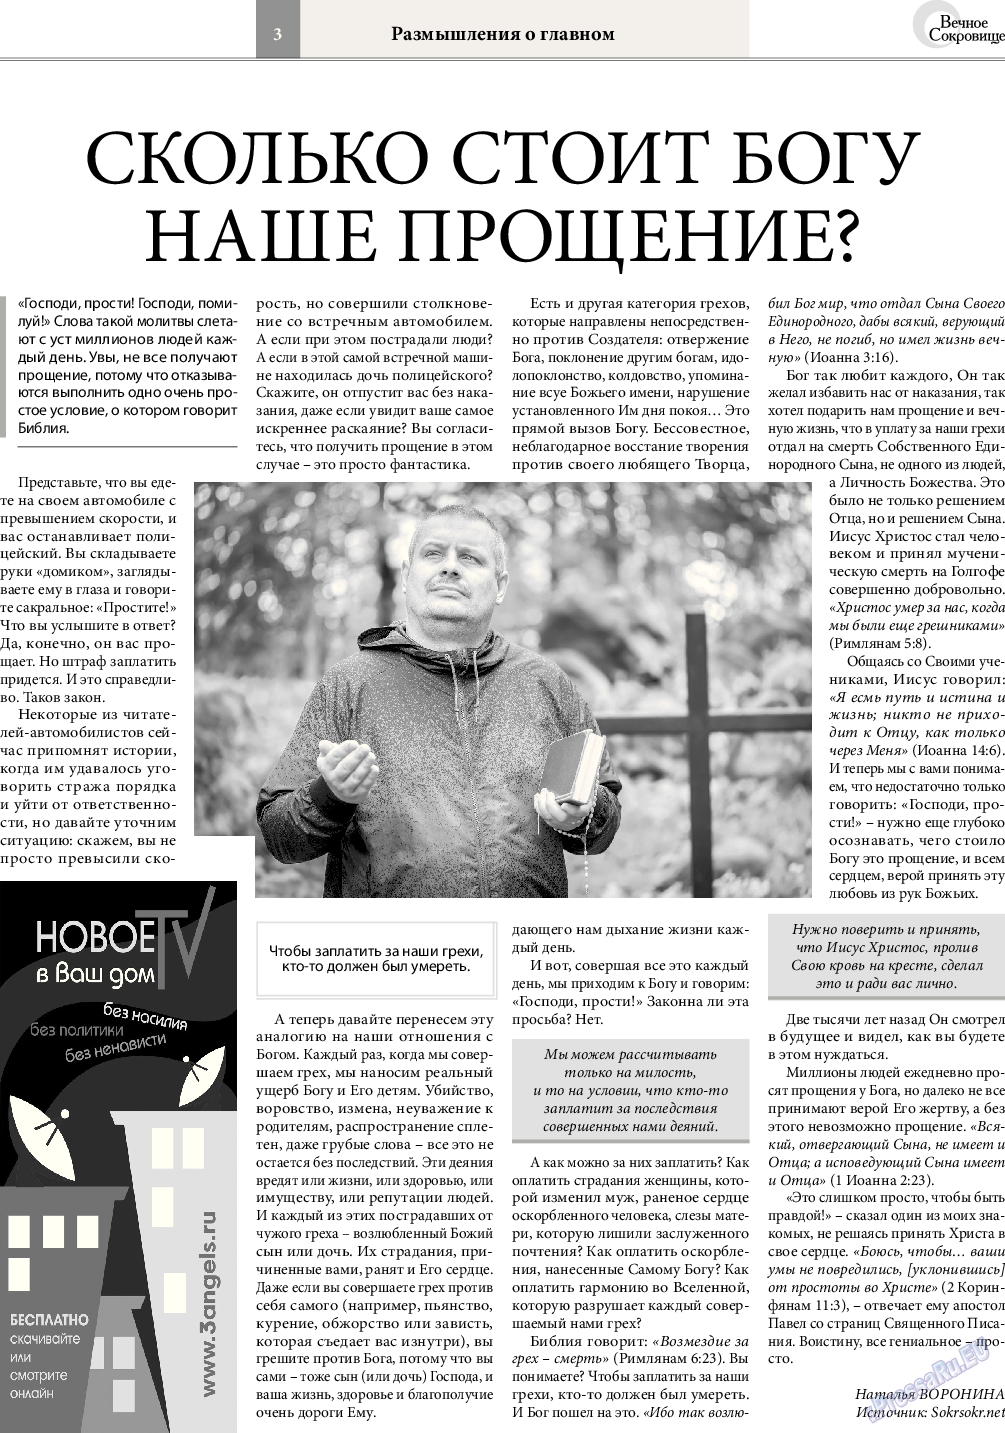 Вечное сокровище, газета. 2016 №6 стр.3